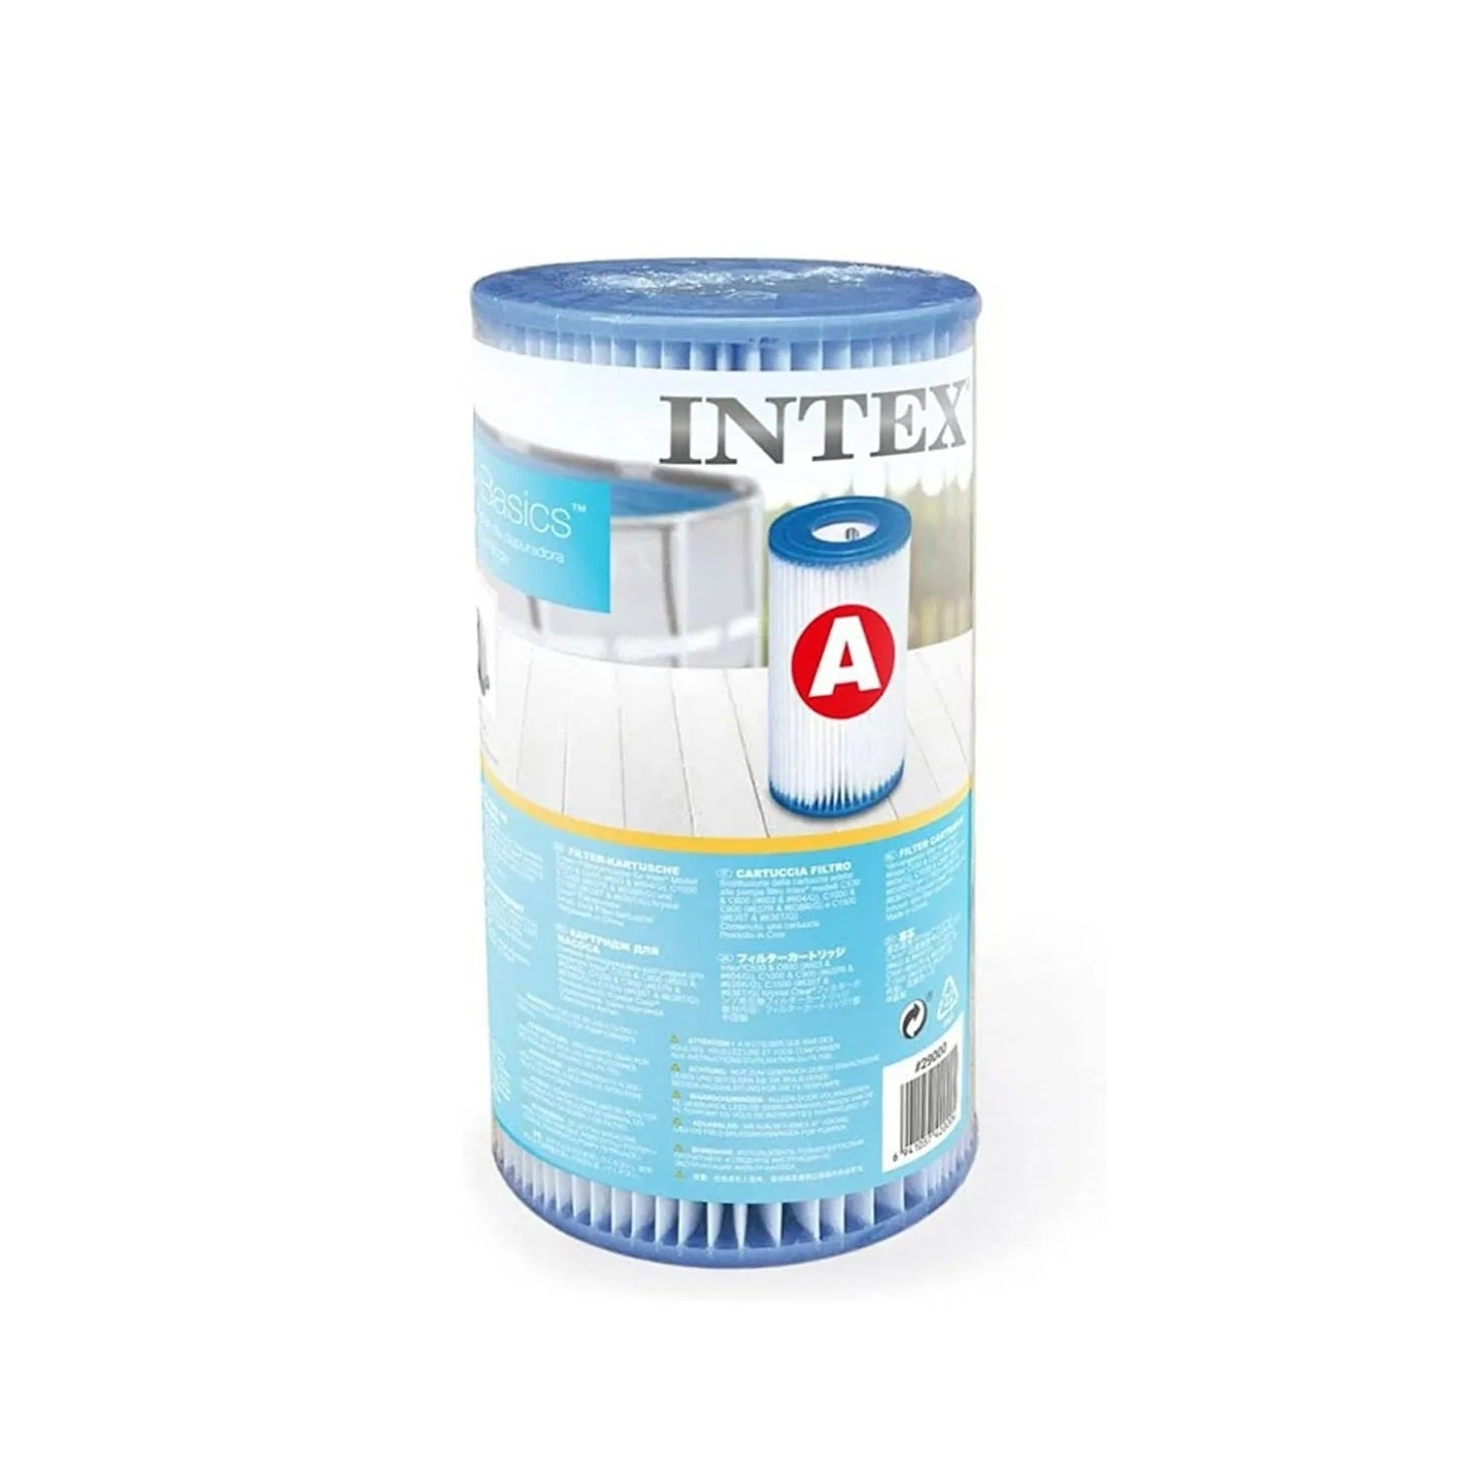 Intex - Recreation Type A Filter Cartridge - Blue